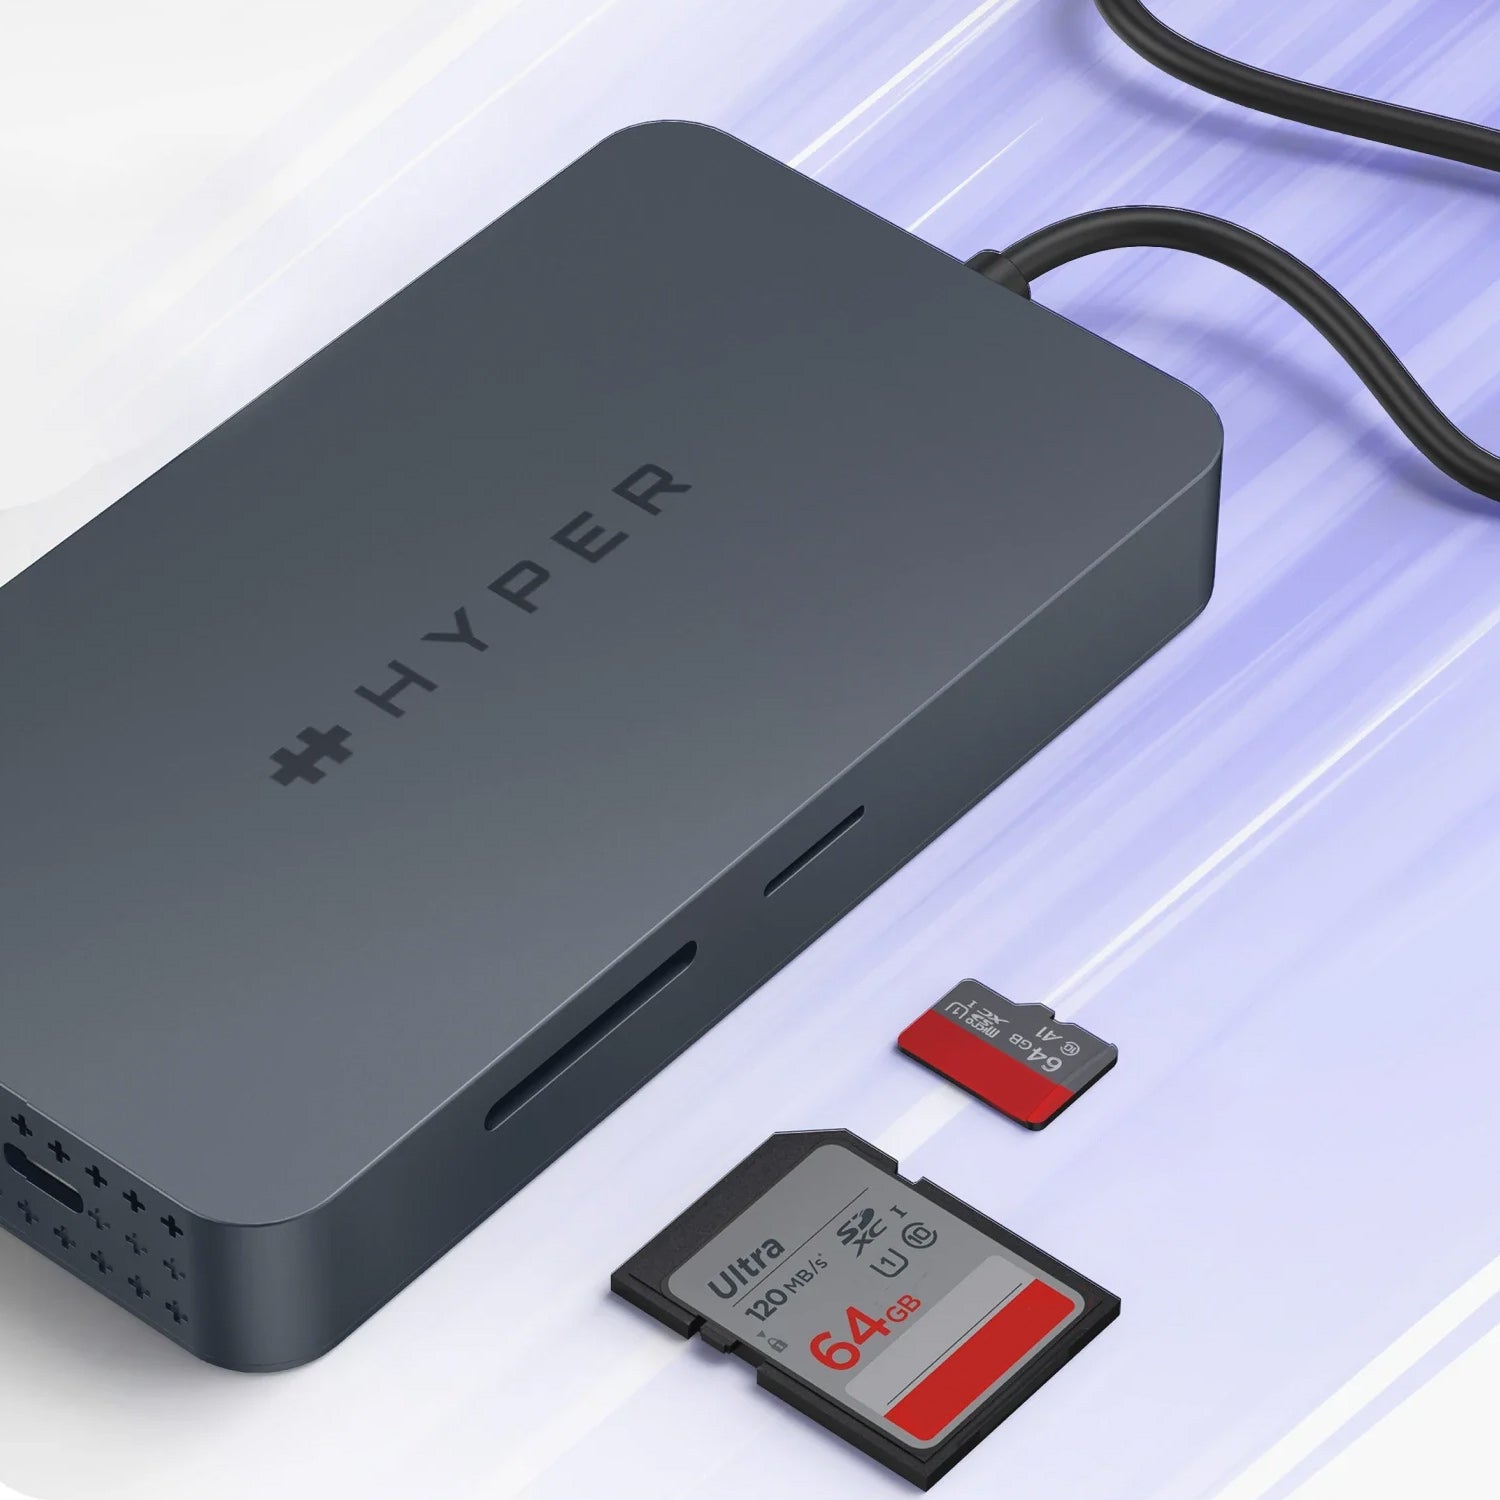 【予約】HyperDrive Next Dual 4K HDMI 10 Port USB-C ハブ For M1, M2, and M3 MacBooks